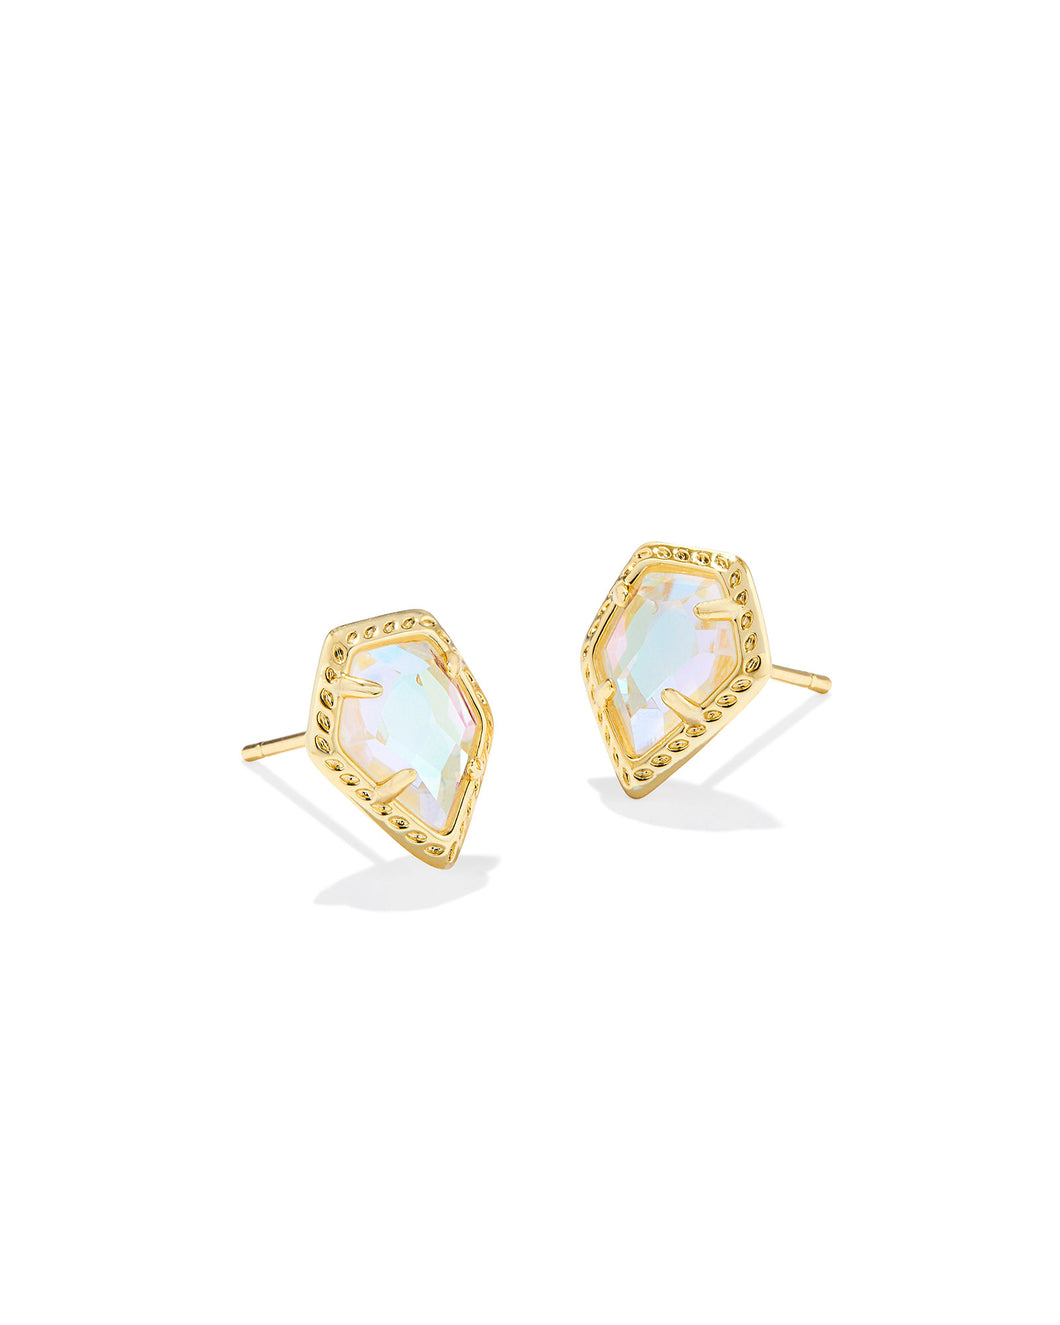 Kendra Scott: Framed Tessa Stud Earrings in Gold Dichroic Glass